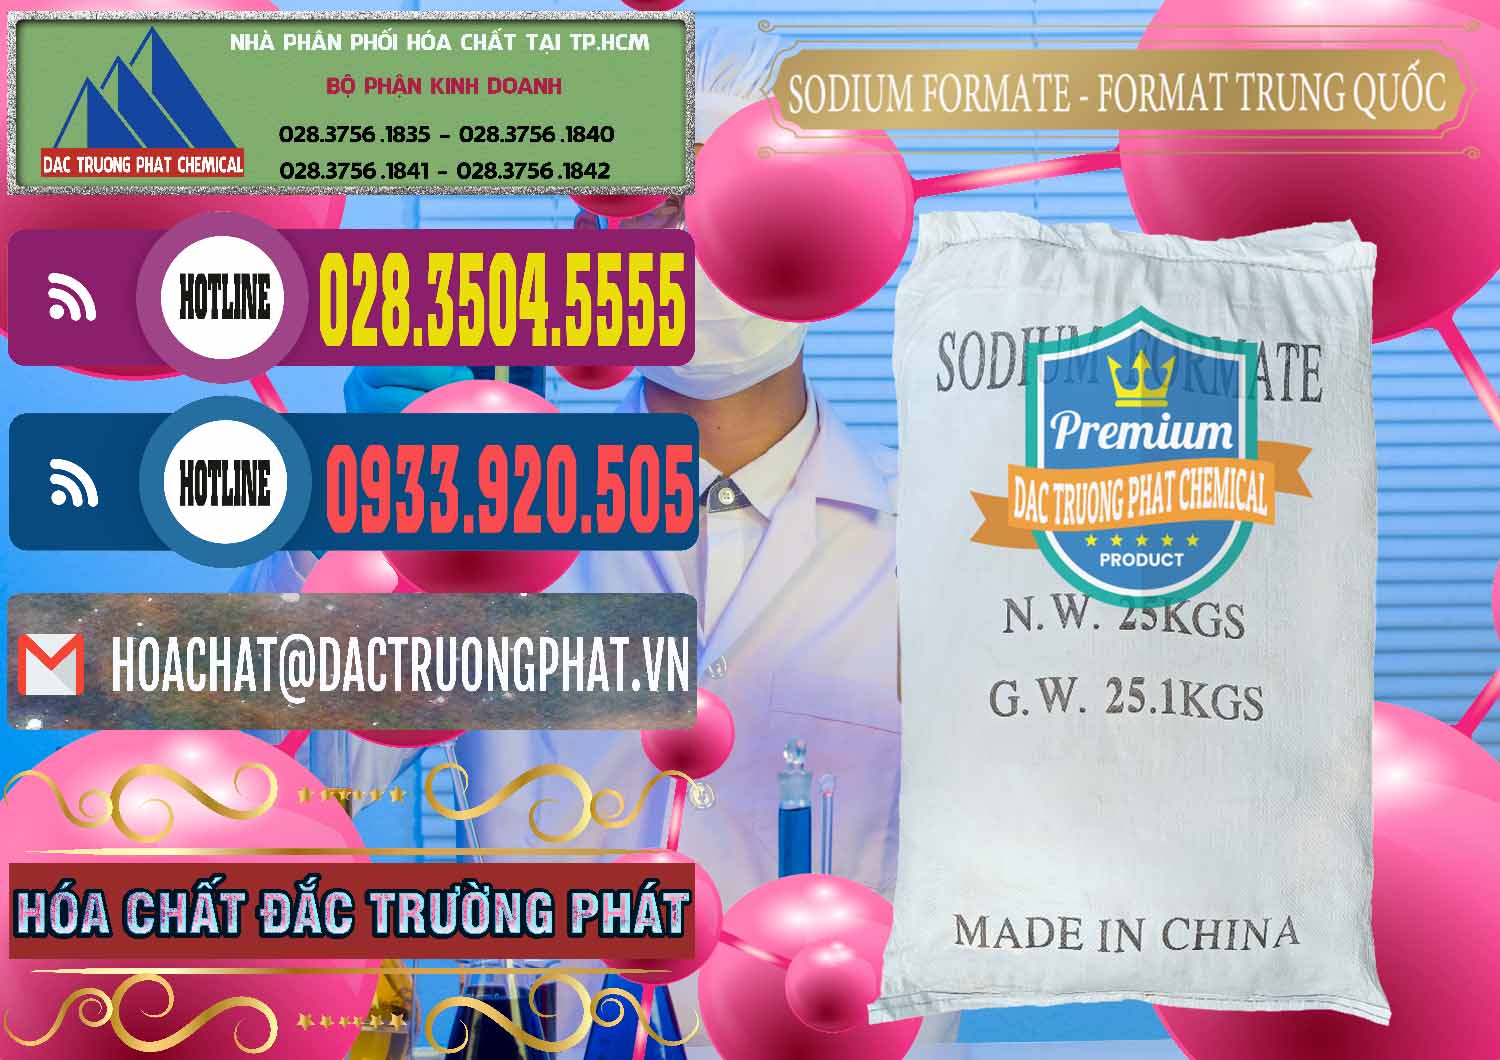 Nơi chuyên cung cấp ( bán ) Sodium Formate - Natri Format Trung Quốc China - 0142 - Công ty bán và cung cấp hóa chất tại TP.HCM - muabanhoachat.com.vn